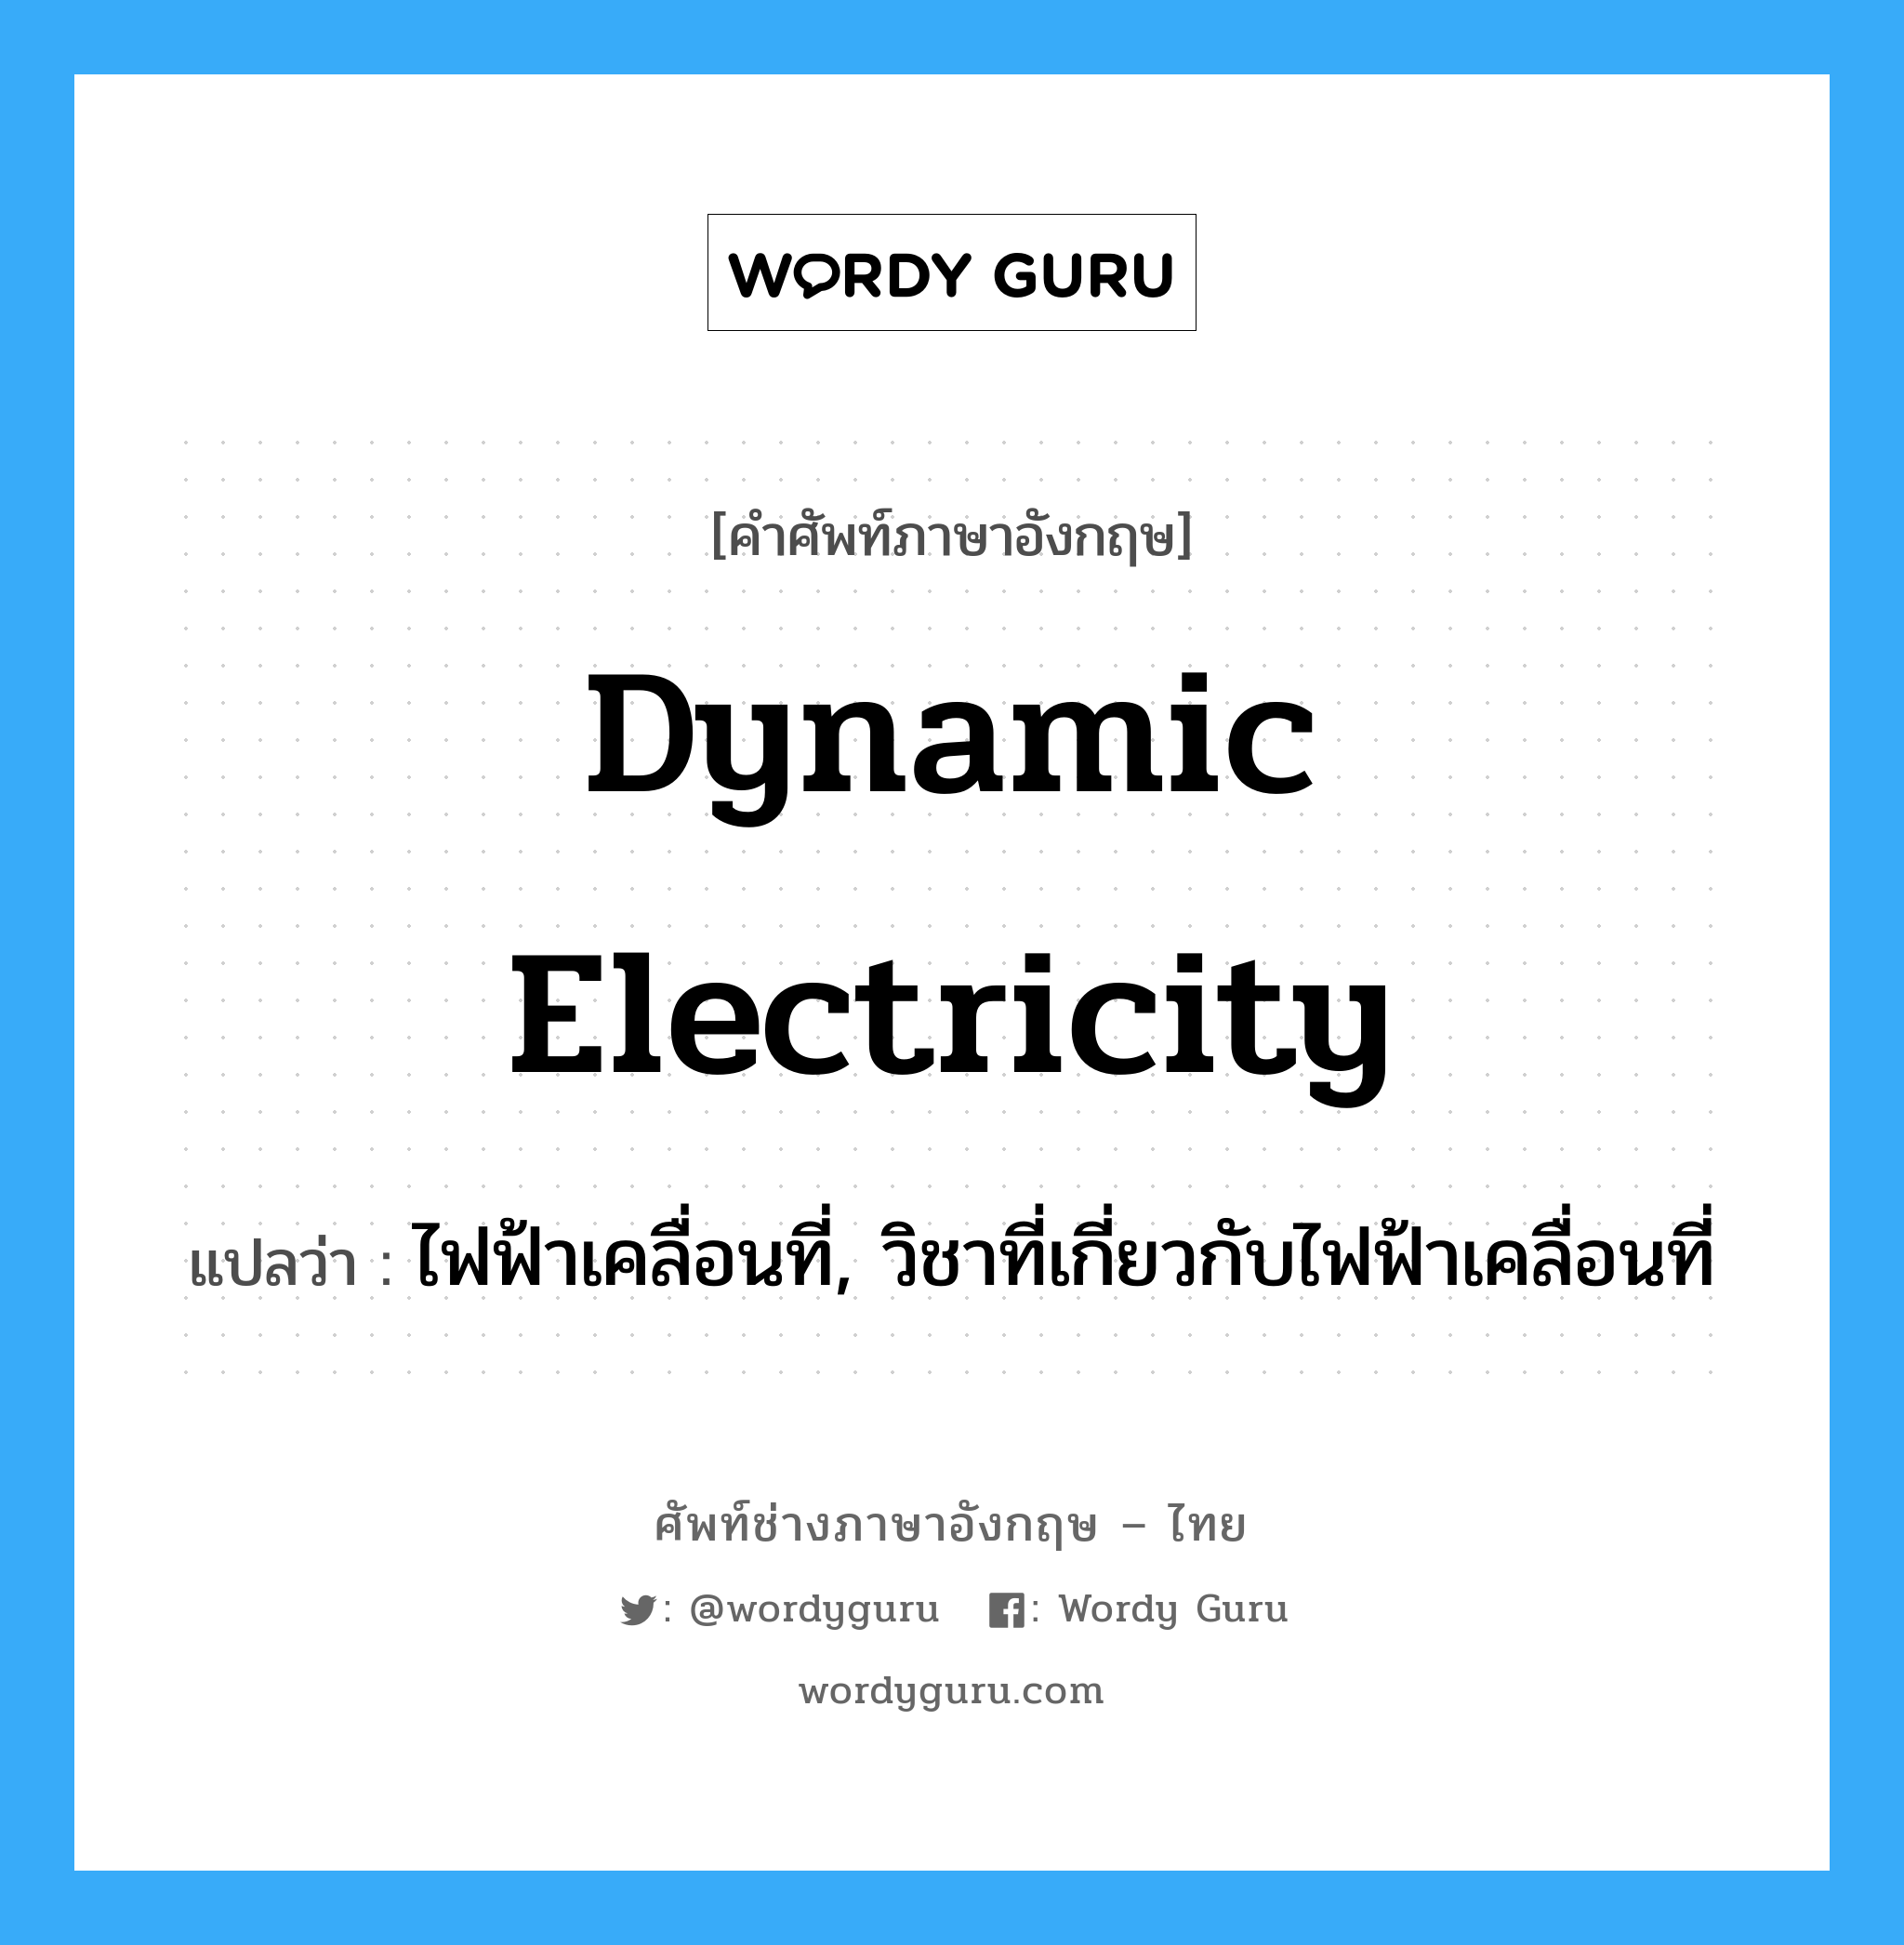 dynamic electricity แปลว่า?, คำศัพท์ช่างภาษาอังกฤษ - ไทย dynamic electricity คำศัพท์ภาษาอังกฤษ dynamic electricity แปลว่า ไฟฟ้าเคลื่อนที่, วิชาที่เกี่ยวกับไฟฟ้าเคลื่อนที่